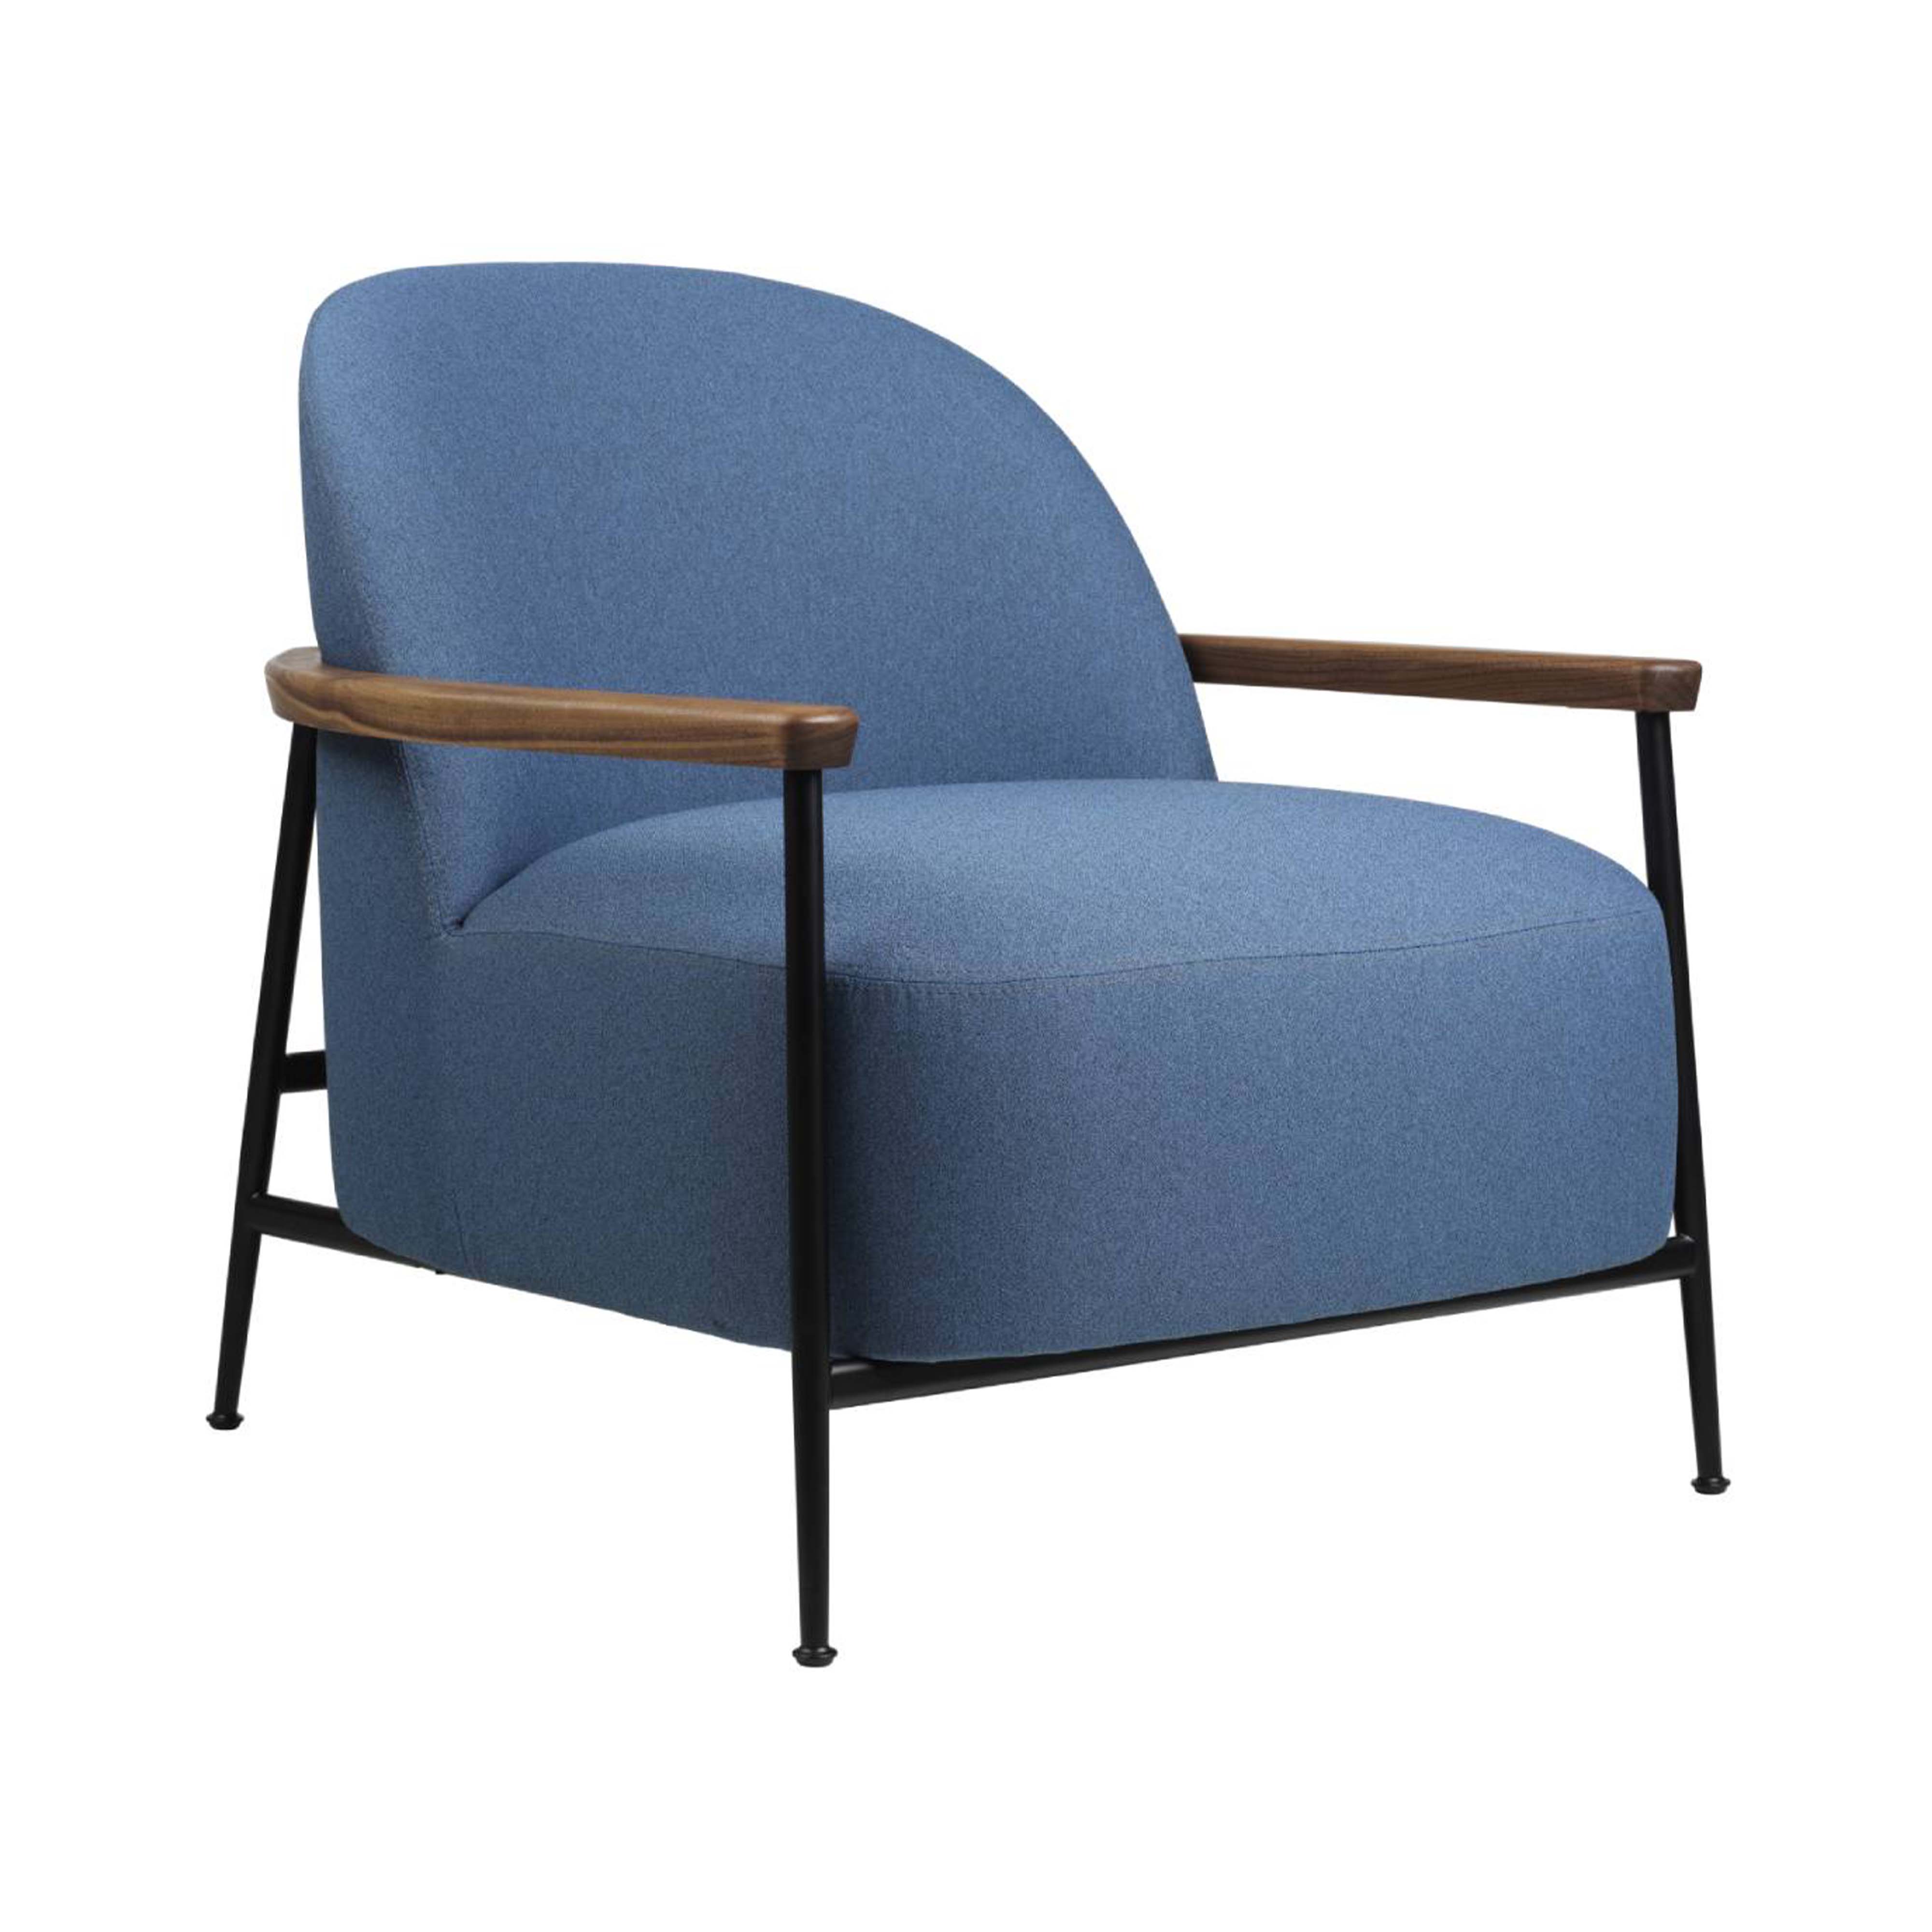 Sejour Lounge Chair with Armrest: Black Matt + Oak